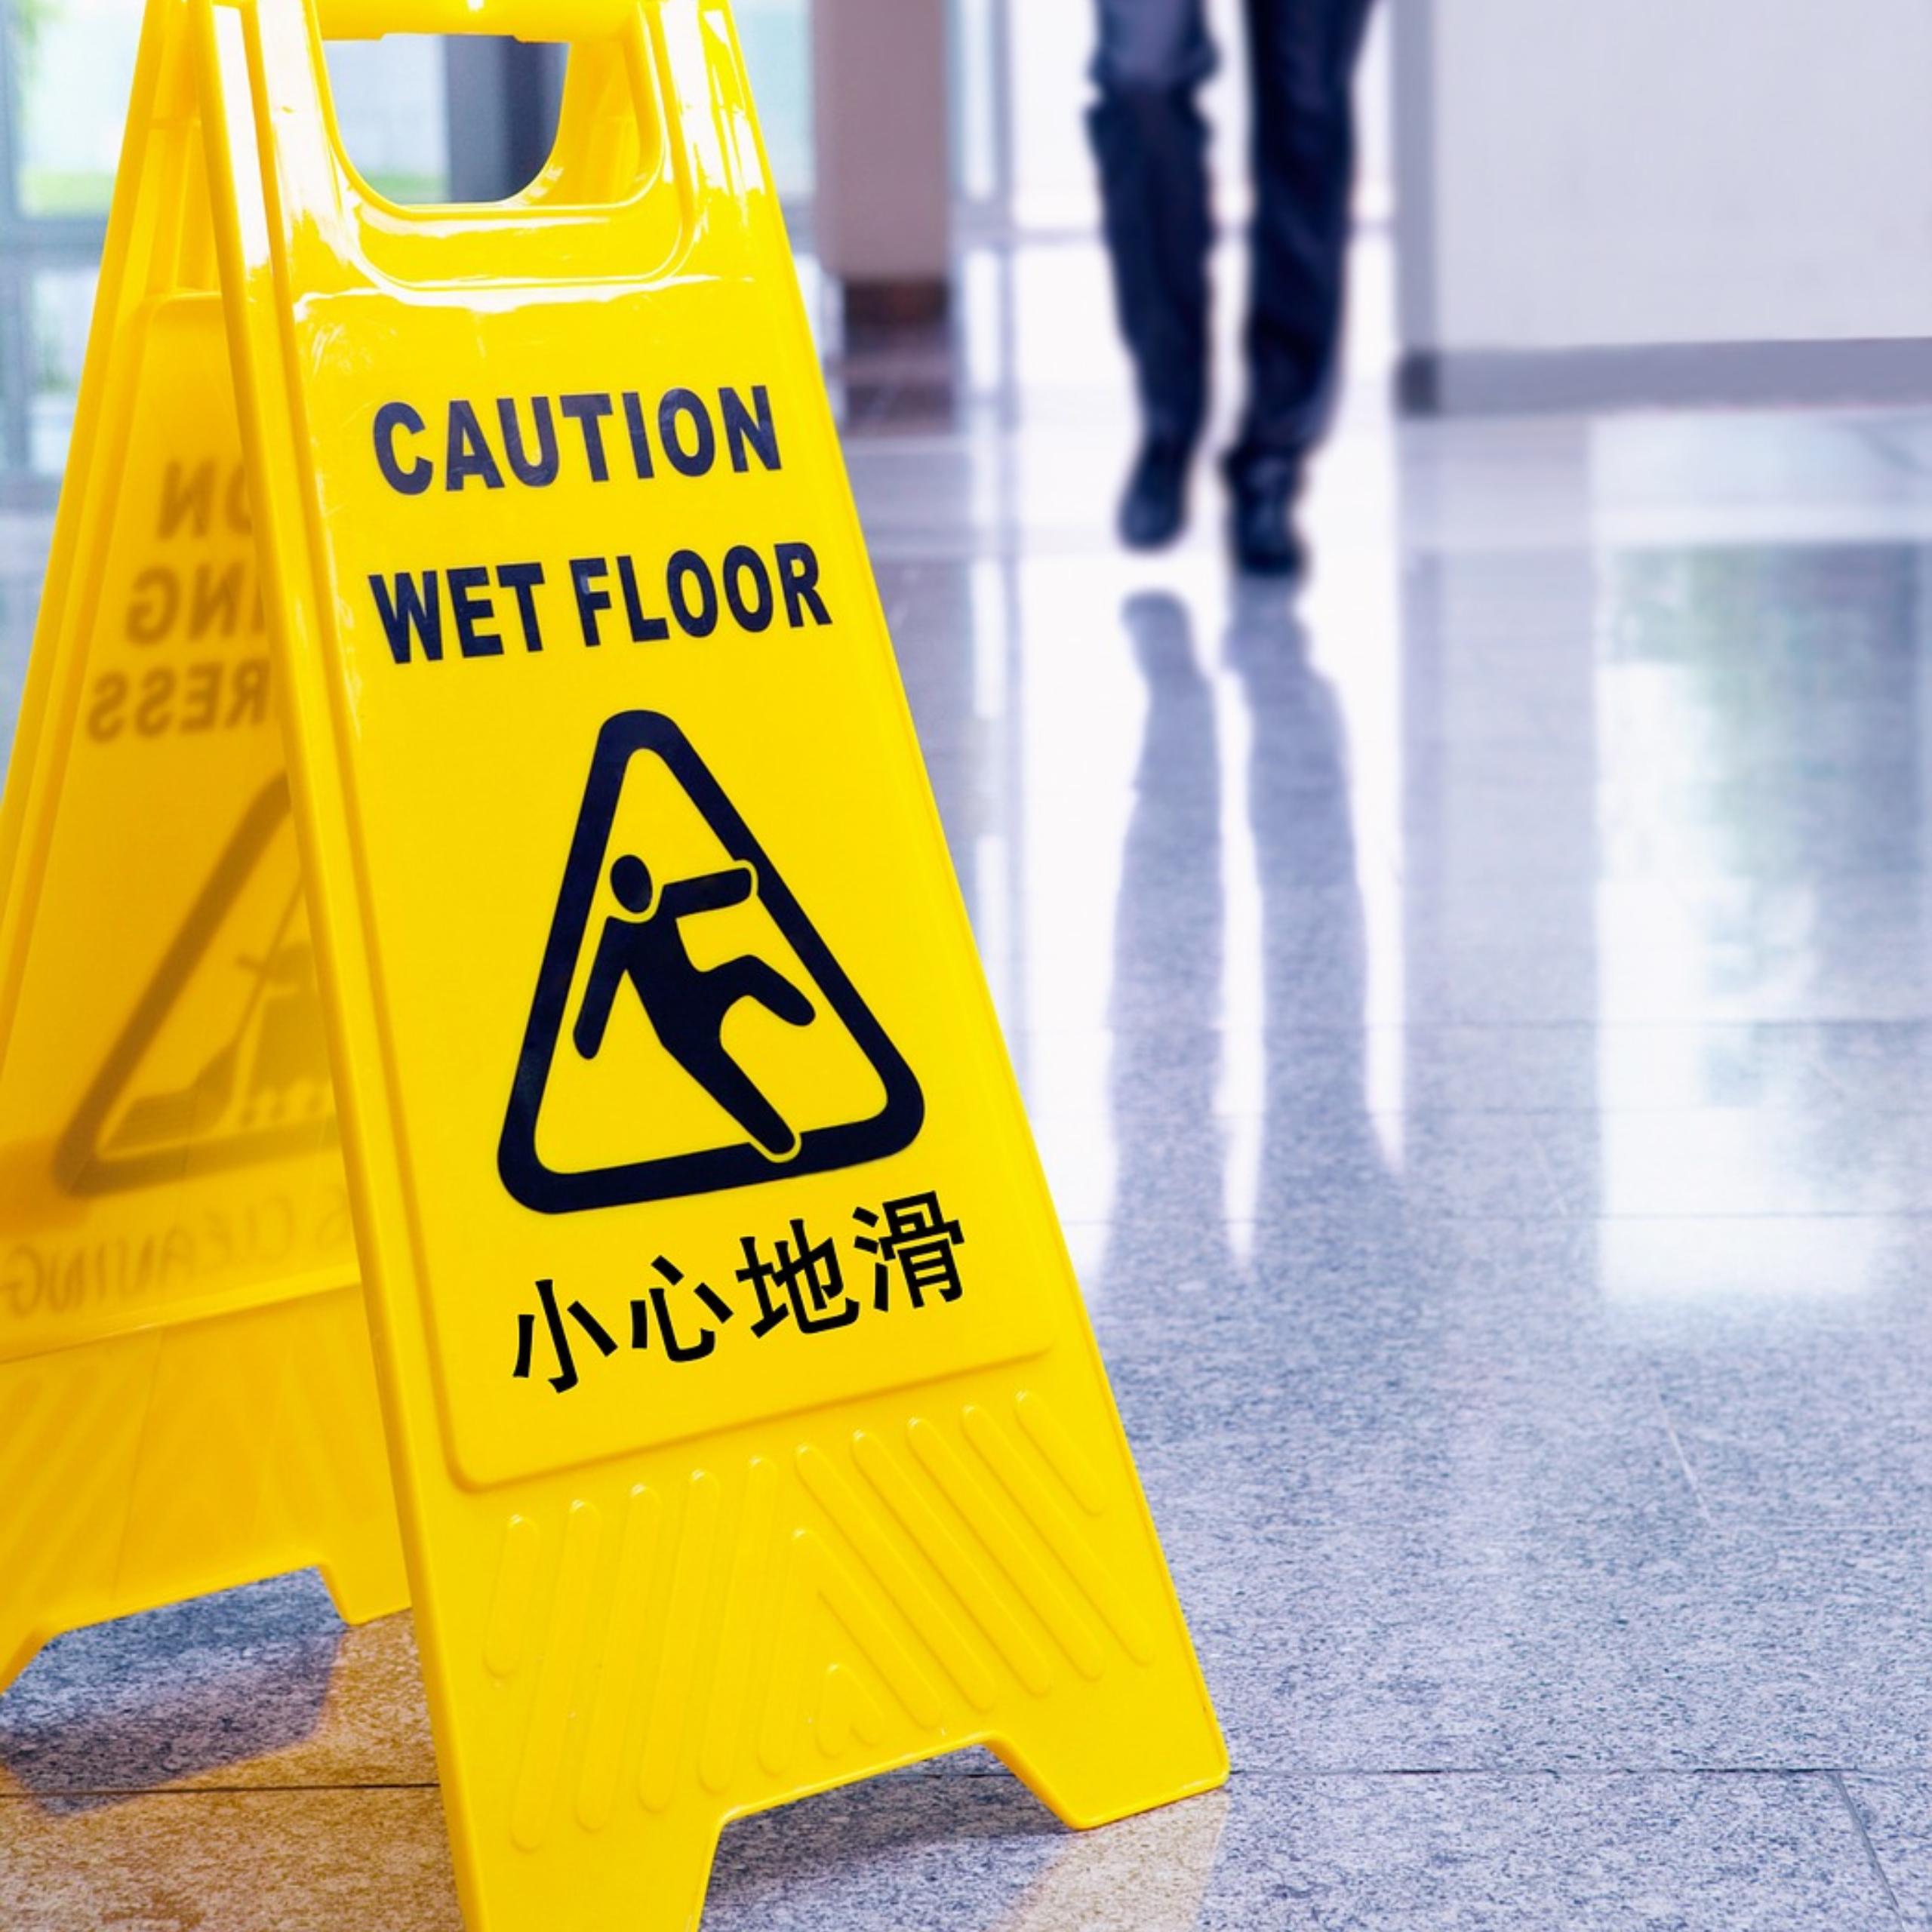 caution wet floor sign in commercial building